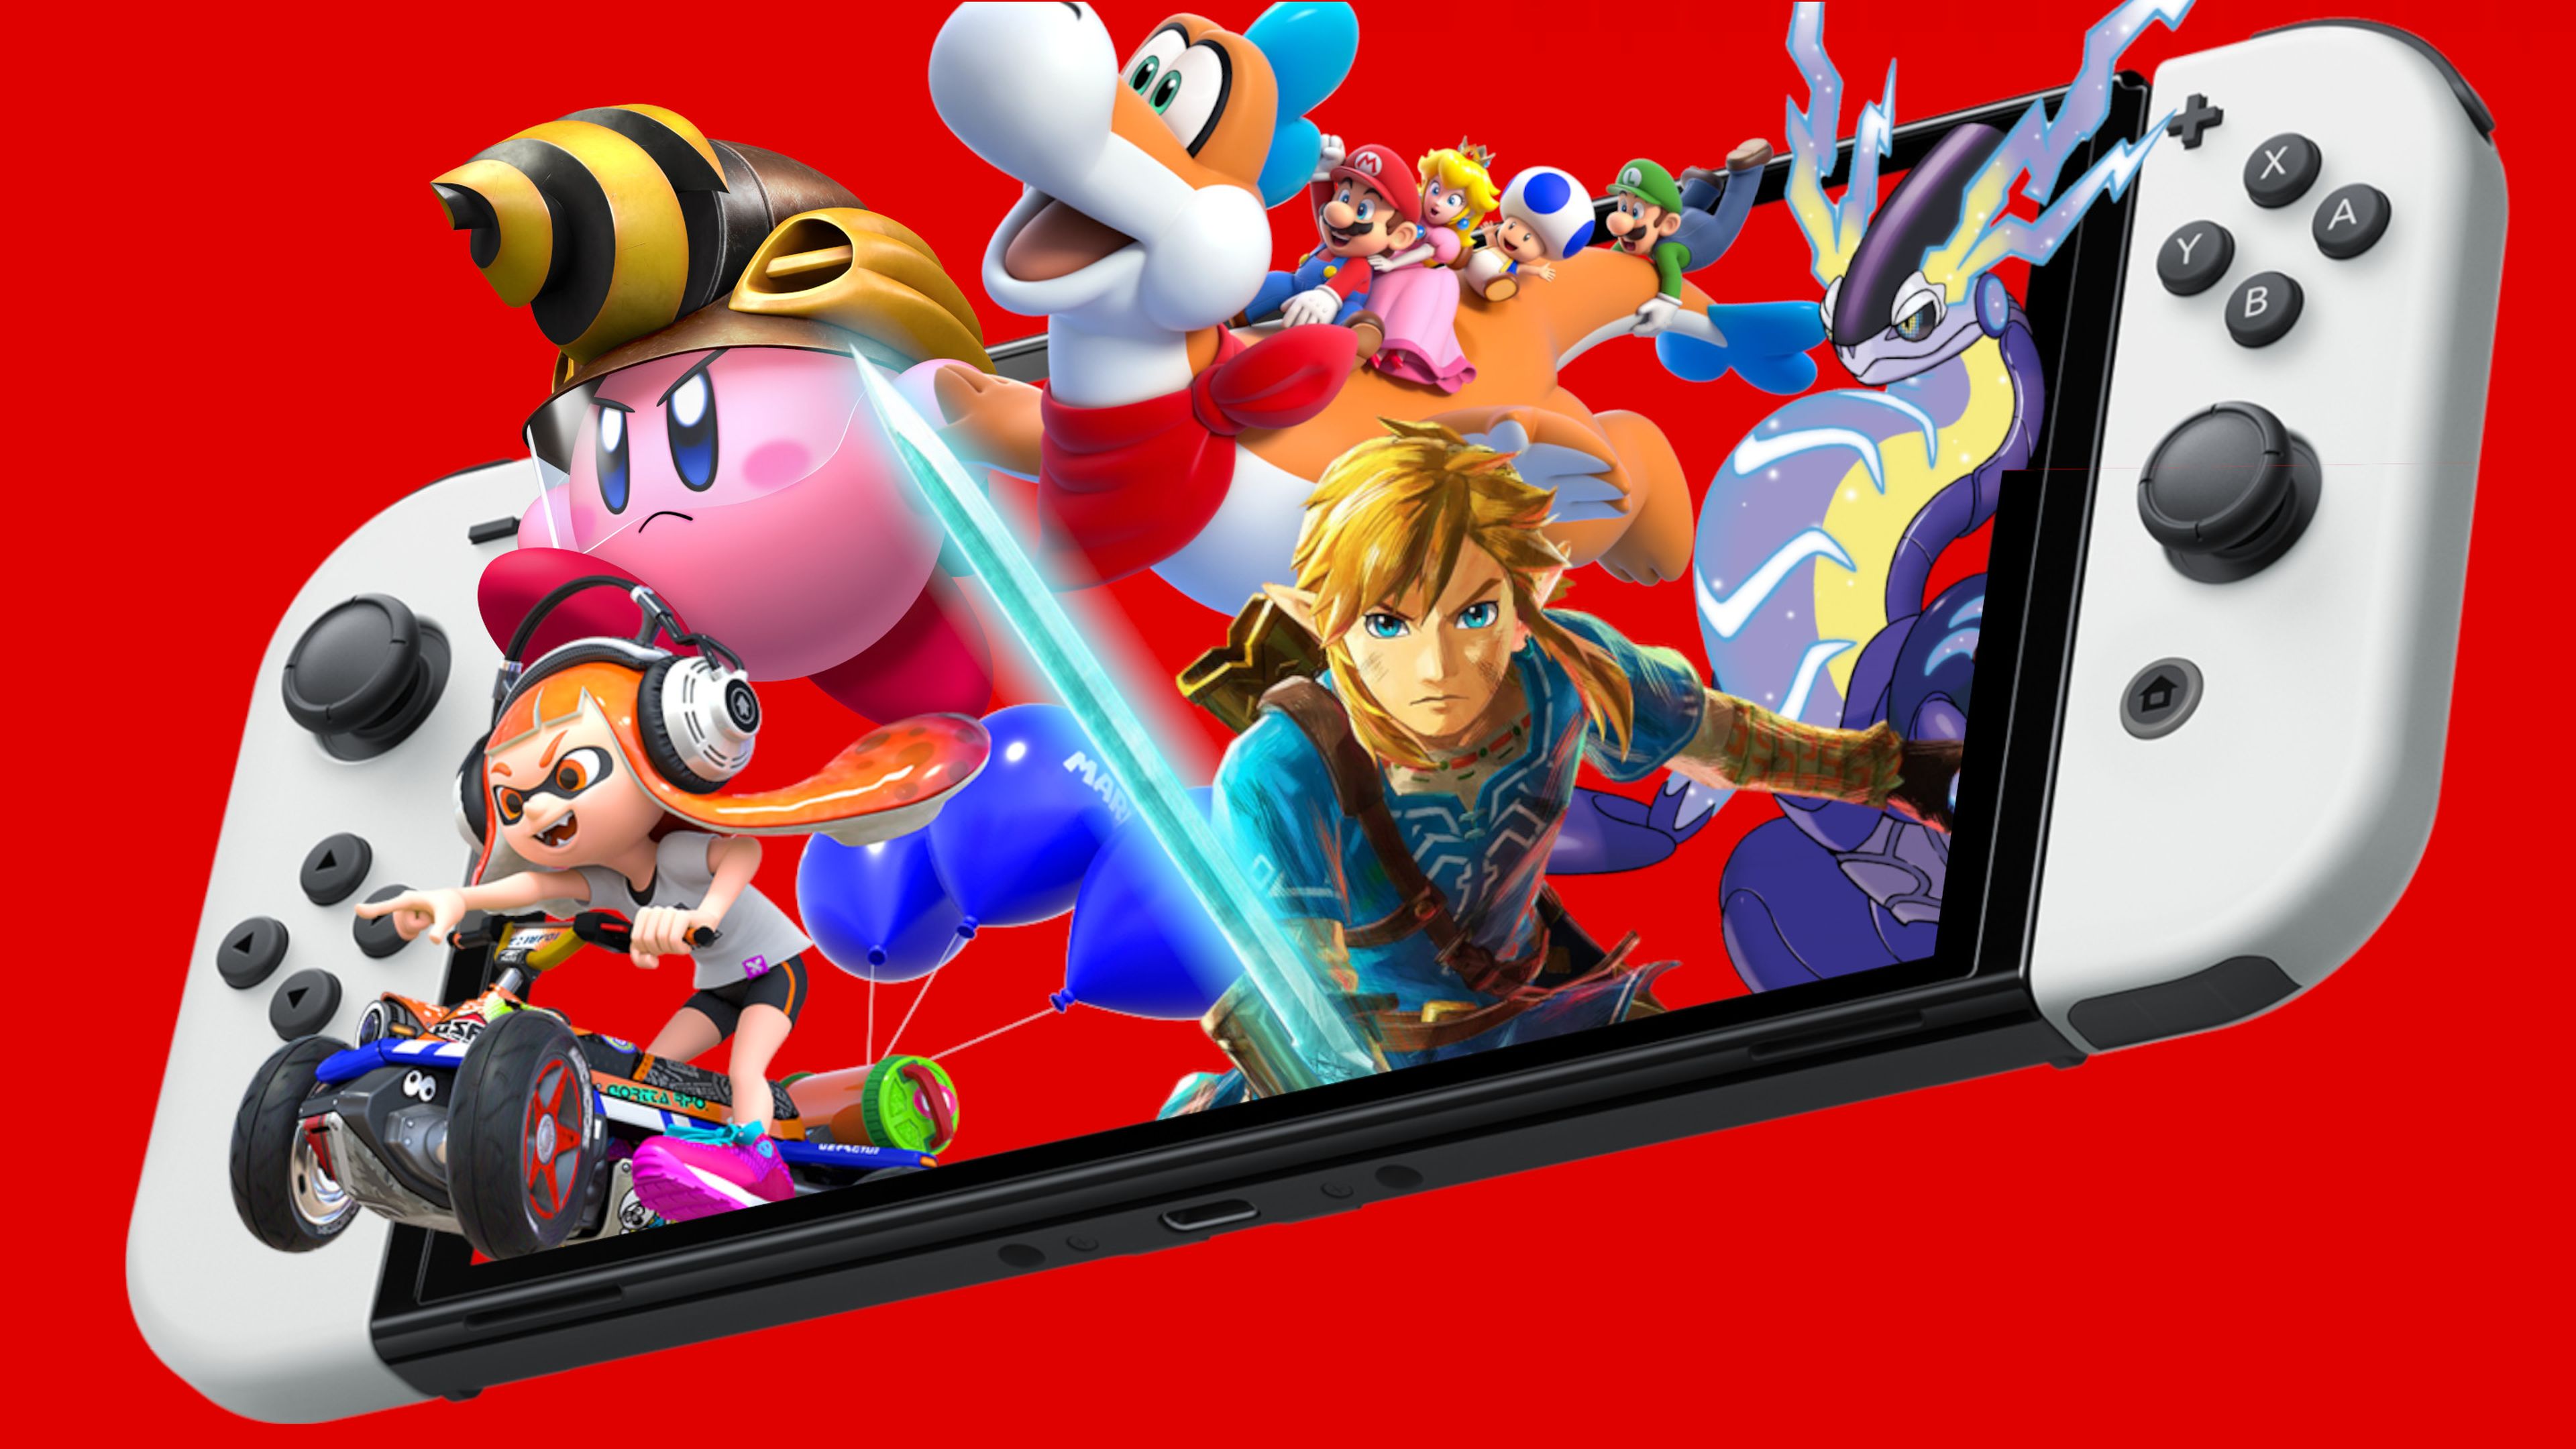 Nintendo Switch: Switch vs vs juegos, precio y todo lo que necesitas saber Hobby Consolas